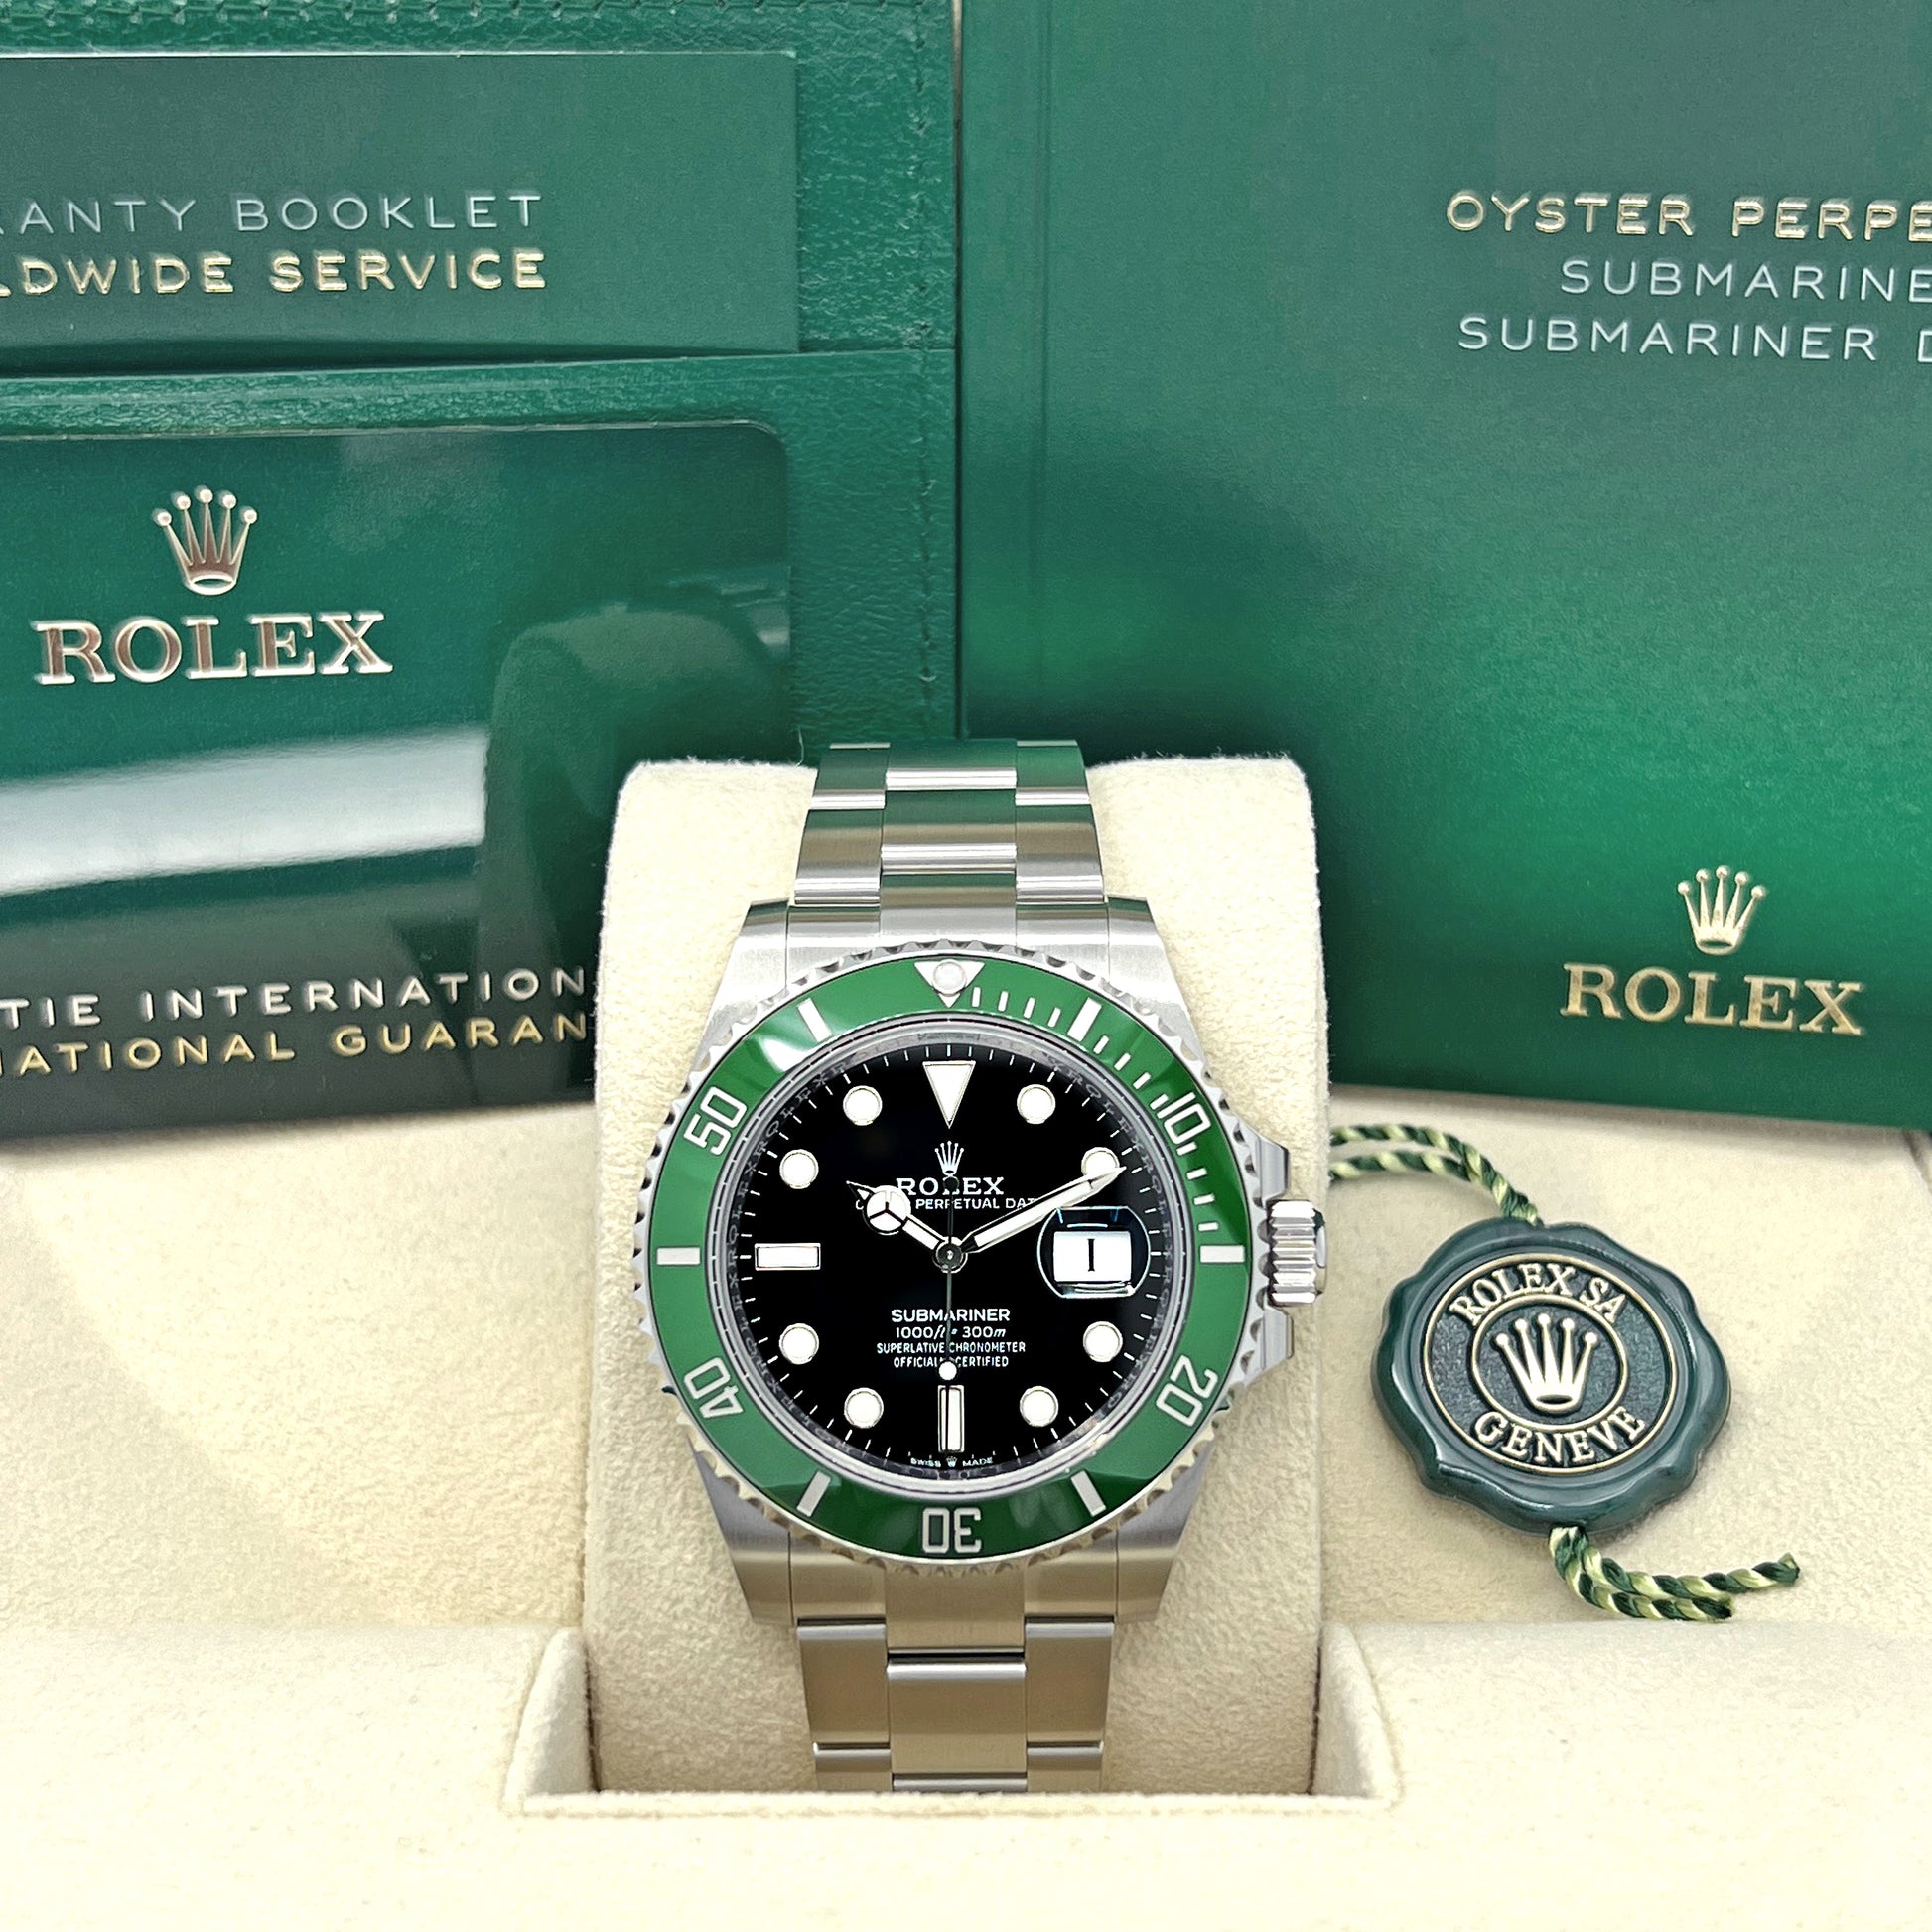 Unworn Rolex Submariner 116610LV Hulk For Sale [NOS]